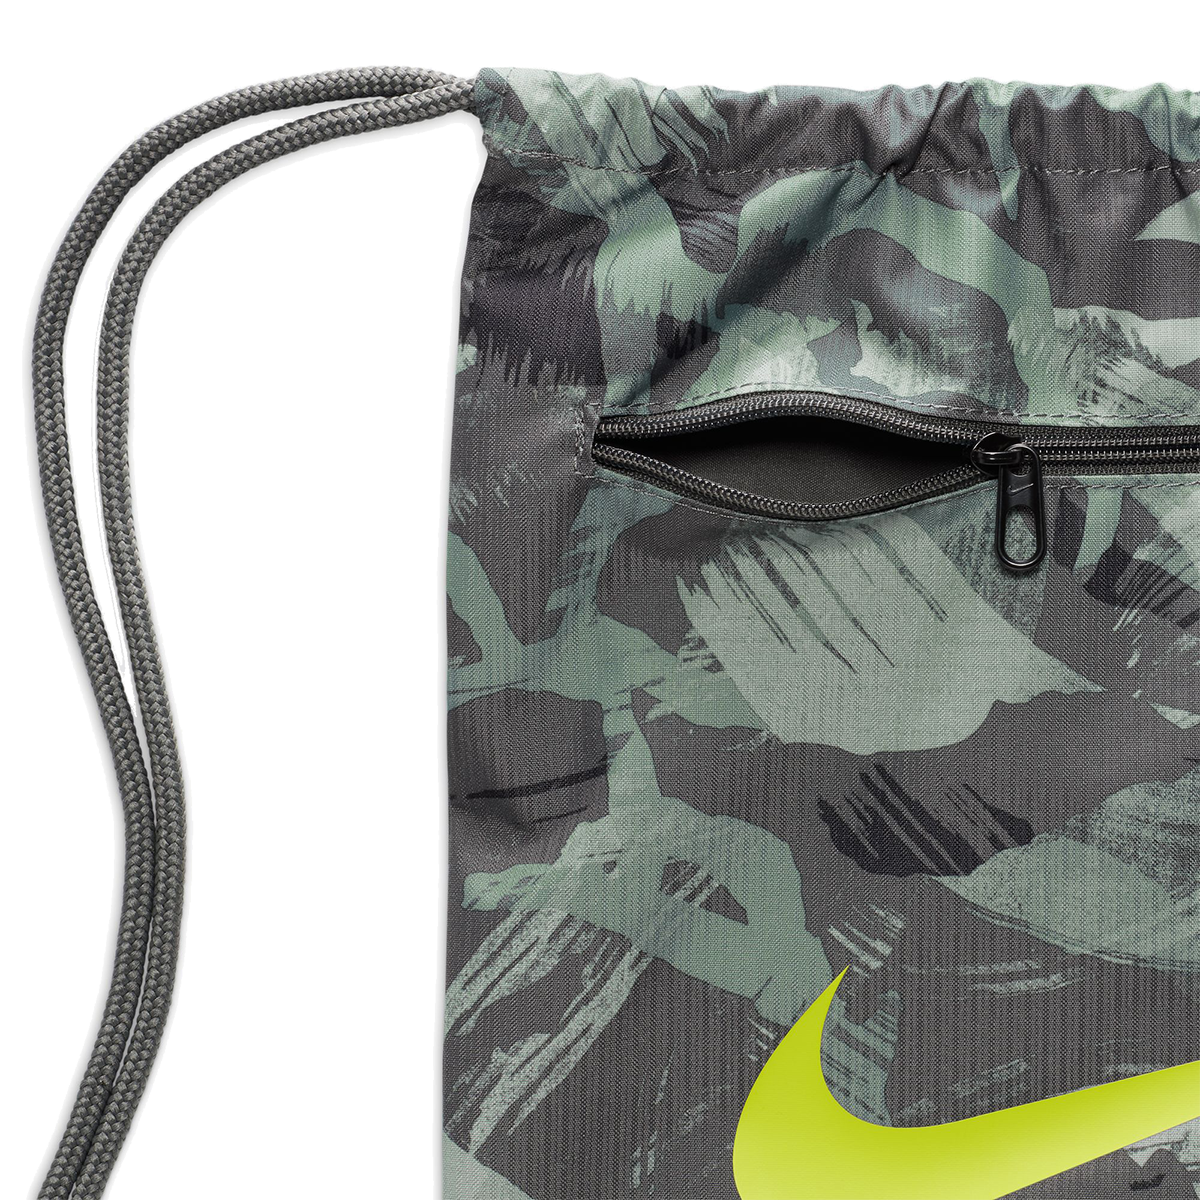 Nike Brasilia 9.5 Gymsack, , large image number null